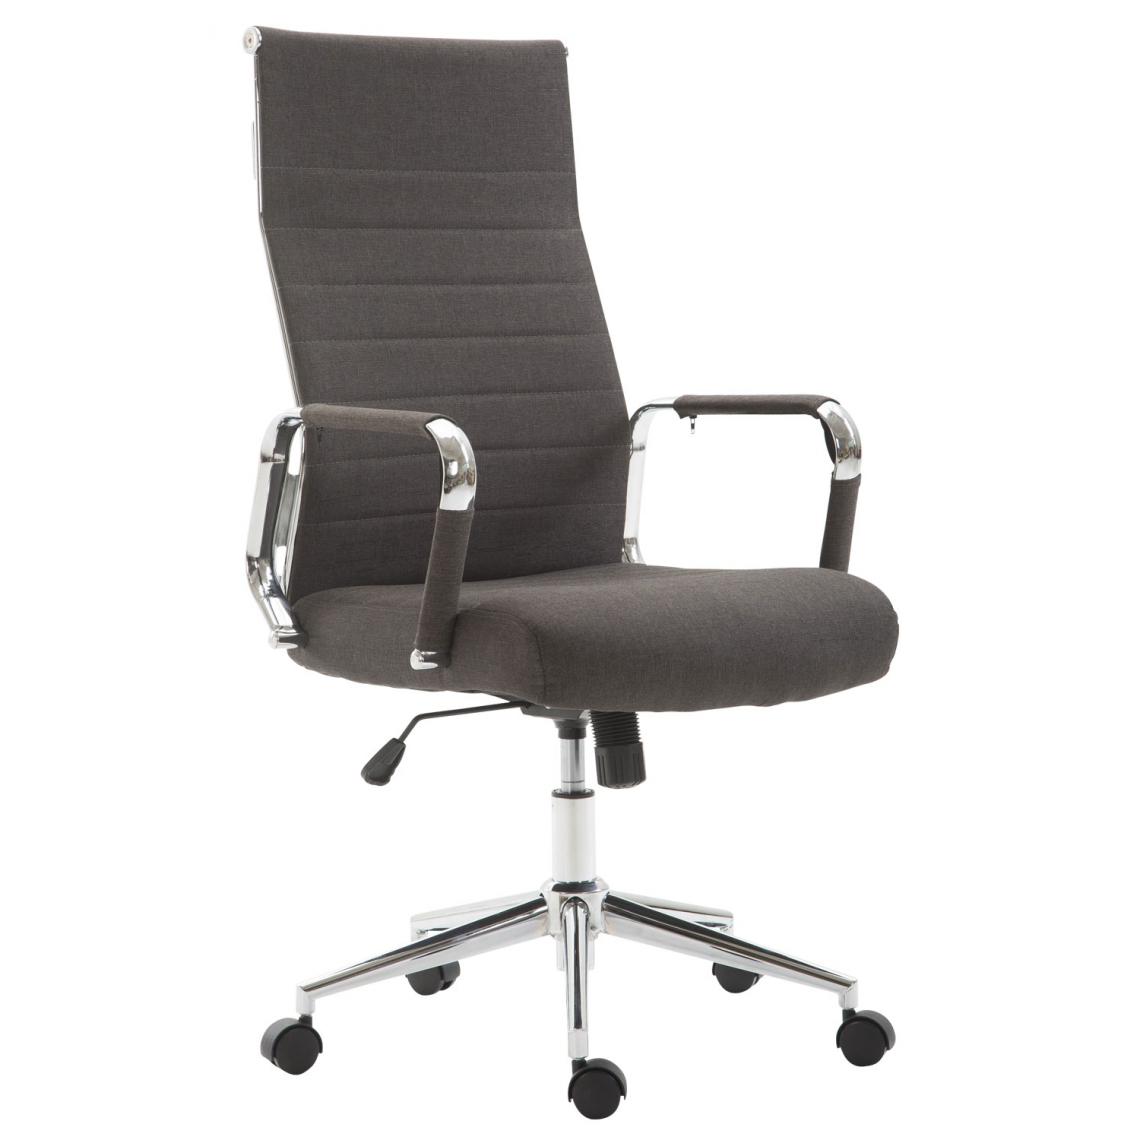 Icaverne - Admirable Chaise de bureau en tissu reference Bissau couleur gris foncé - Chaises